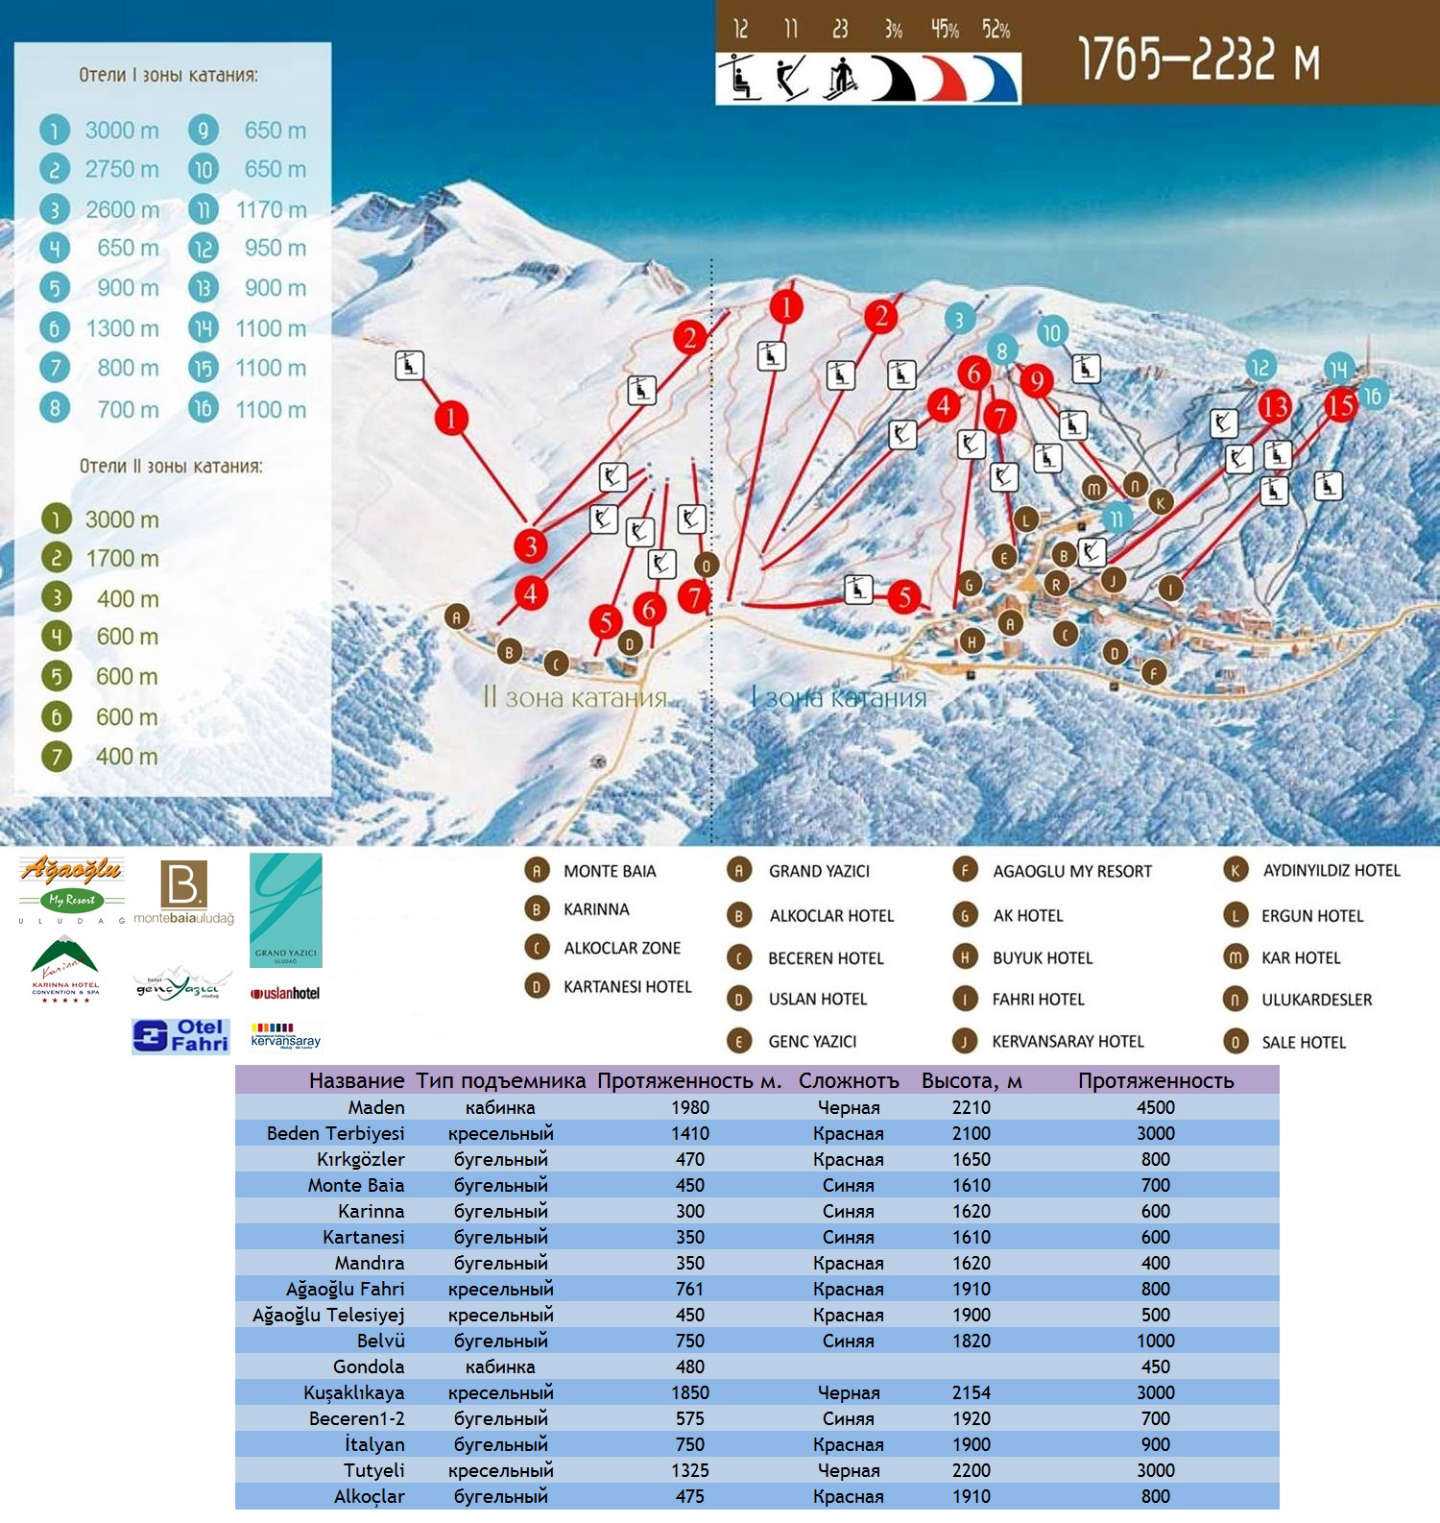 Где расположен горнолыжный курорт Улудаг в Турции, как до него добраться Инфраструктура, схема трасс и их описание, развлечения на территории Стоимость аренды оборудования, ски-пассы Цены на проживание